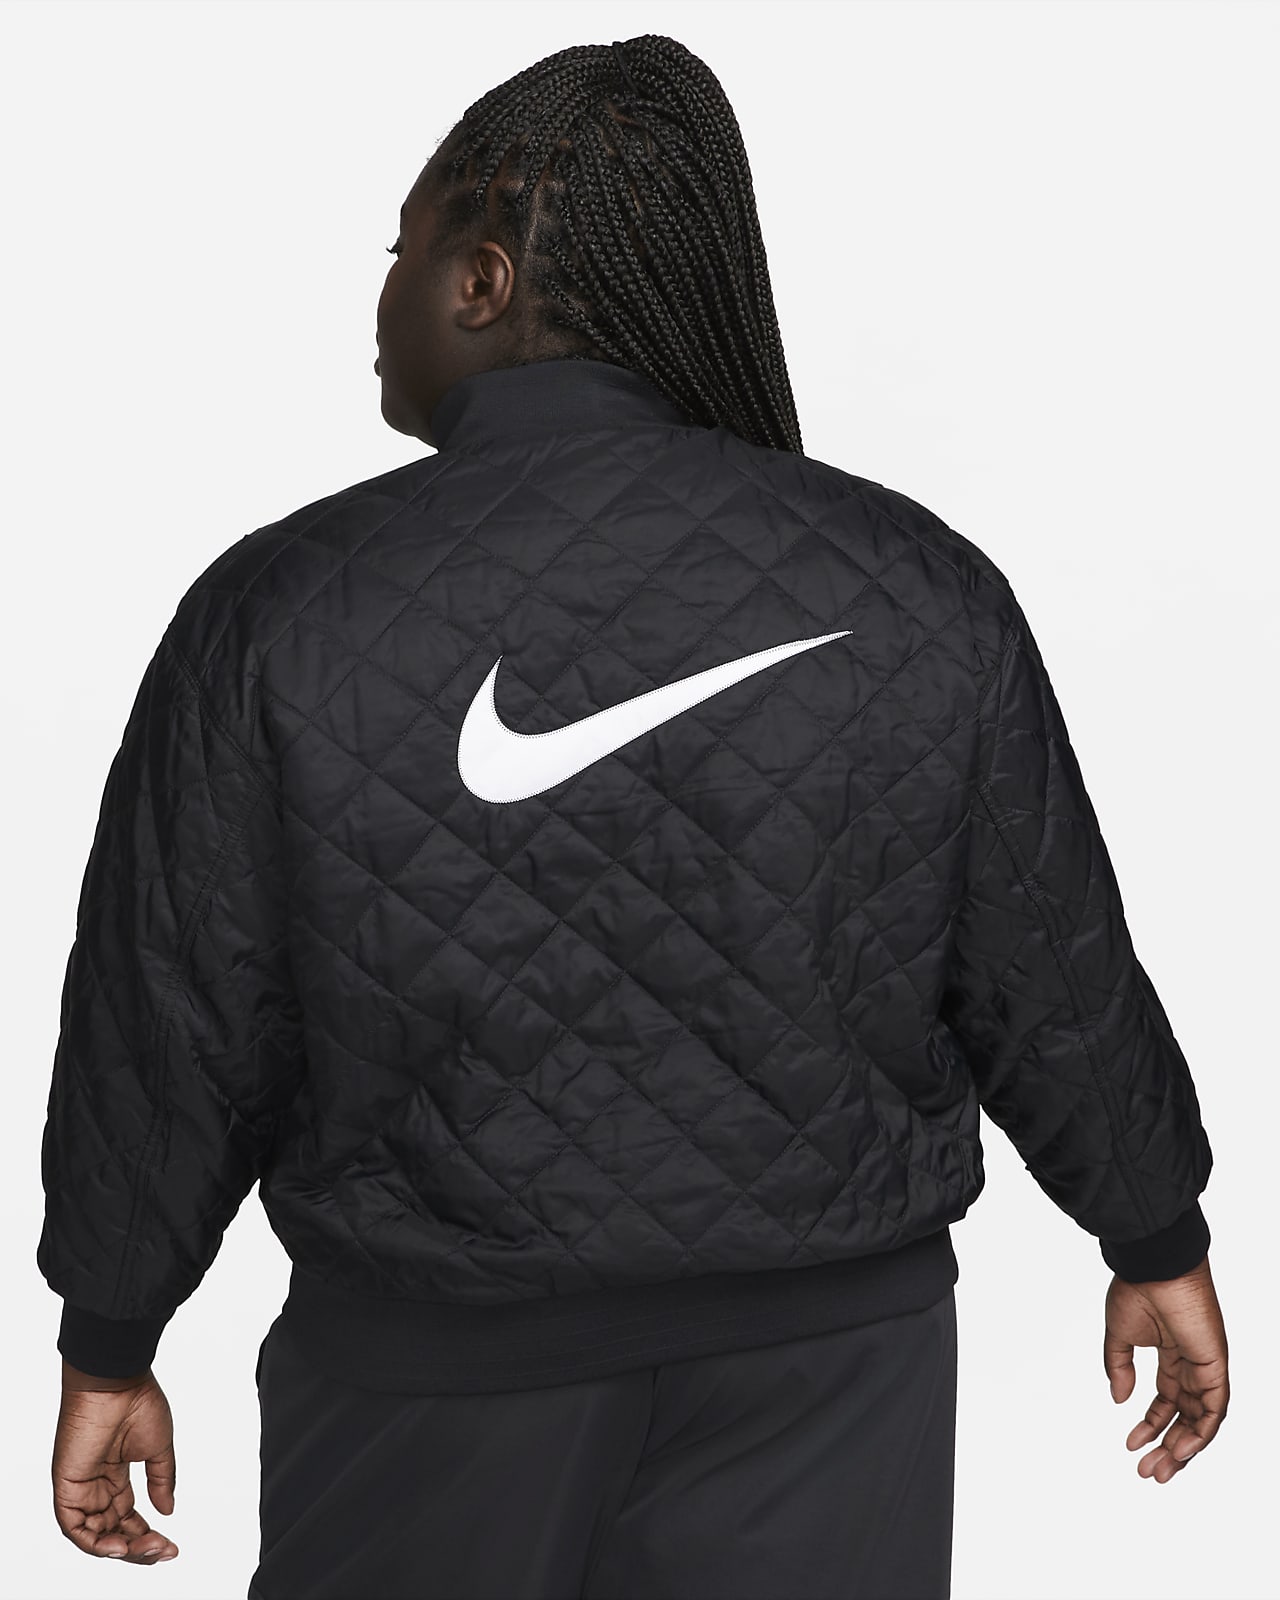 Nike Sportswear Women's Varsity Jacket